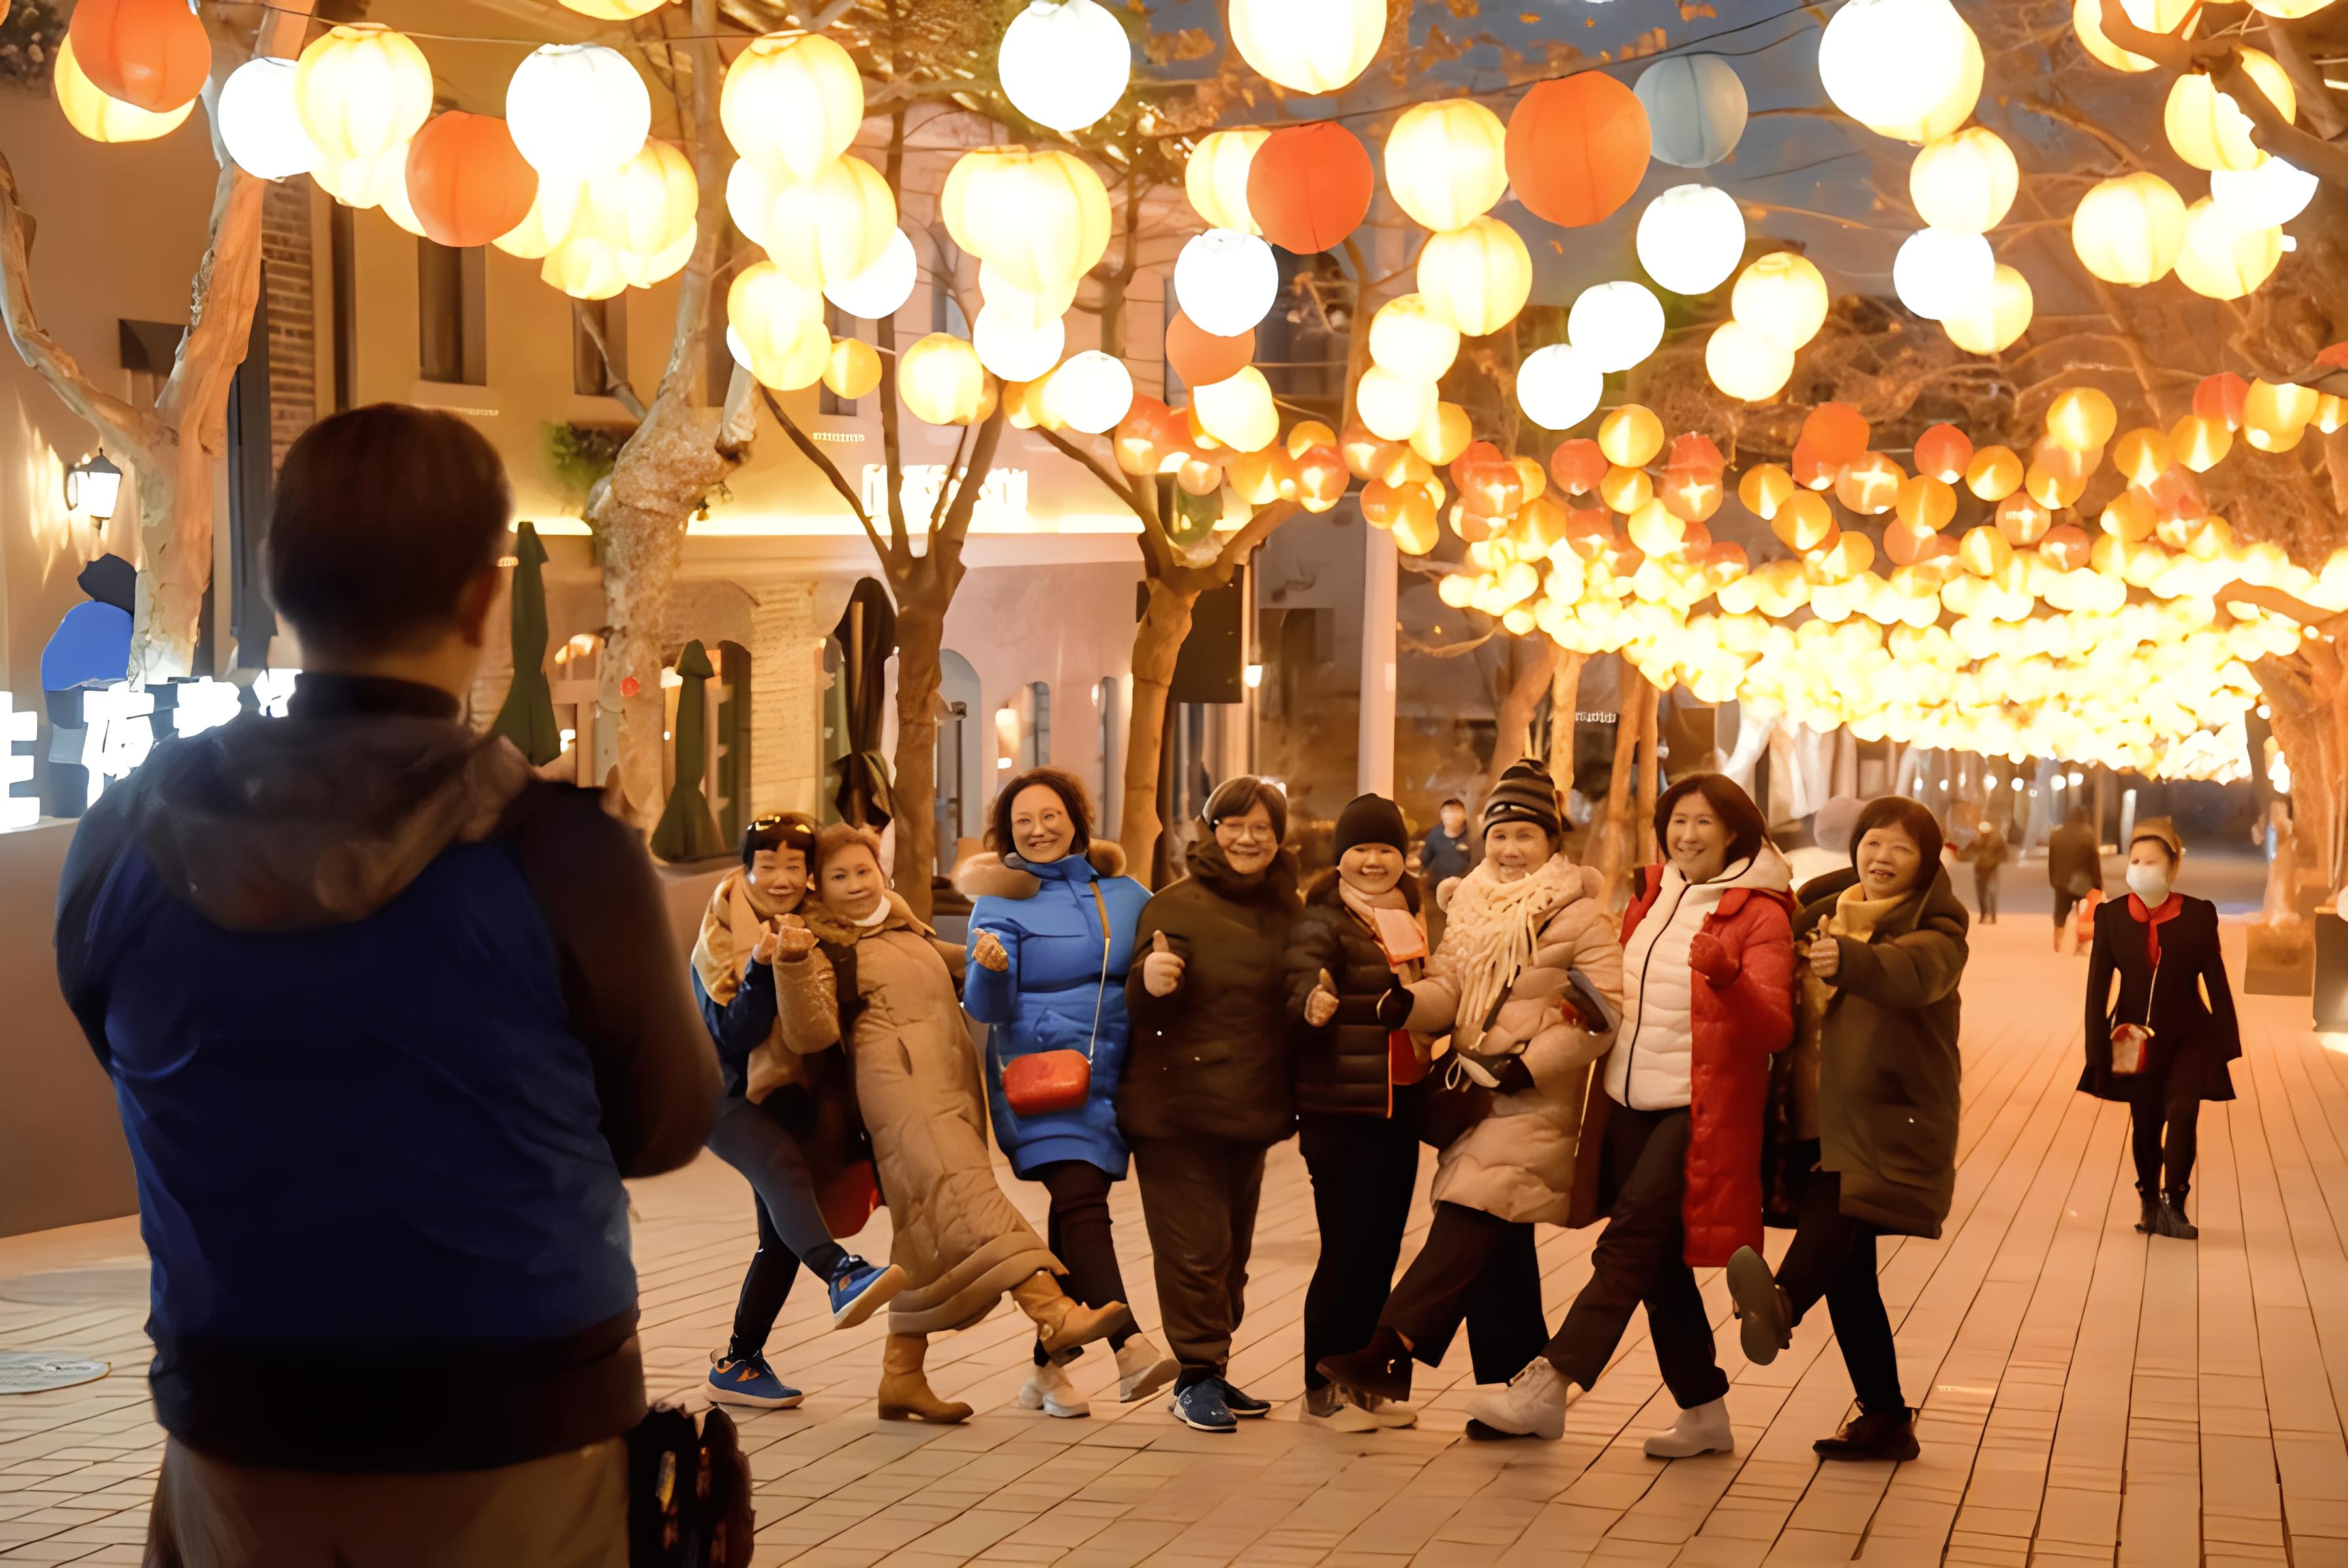 تعطیلات عید بهار چین، چگونه گردشگران چینی را جذب می کند؟ا